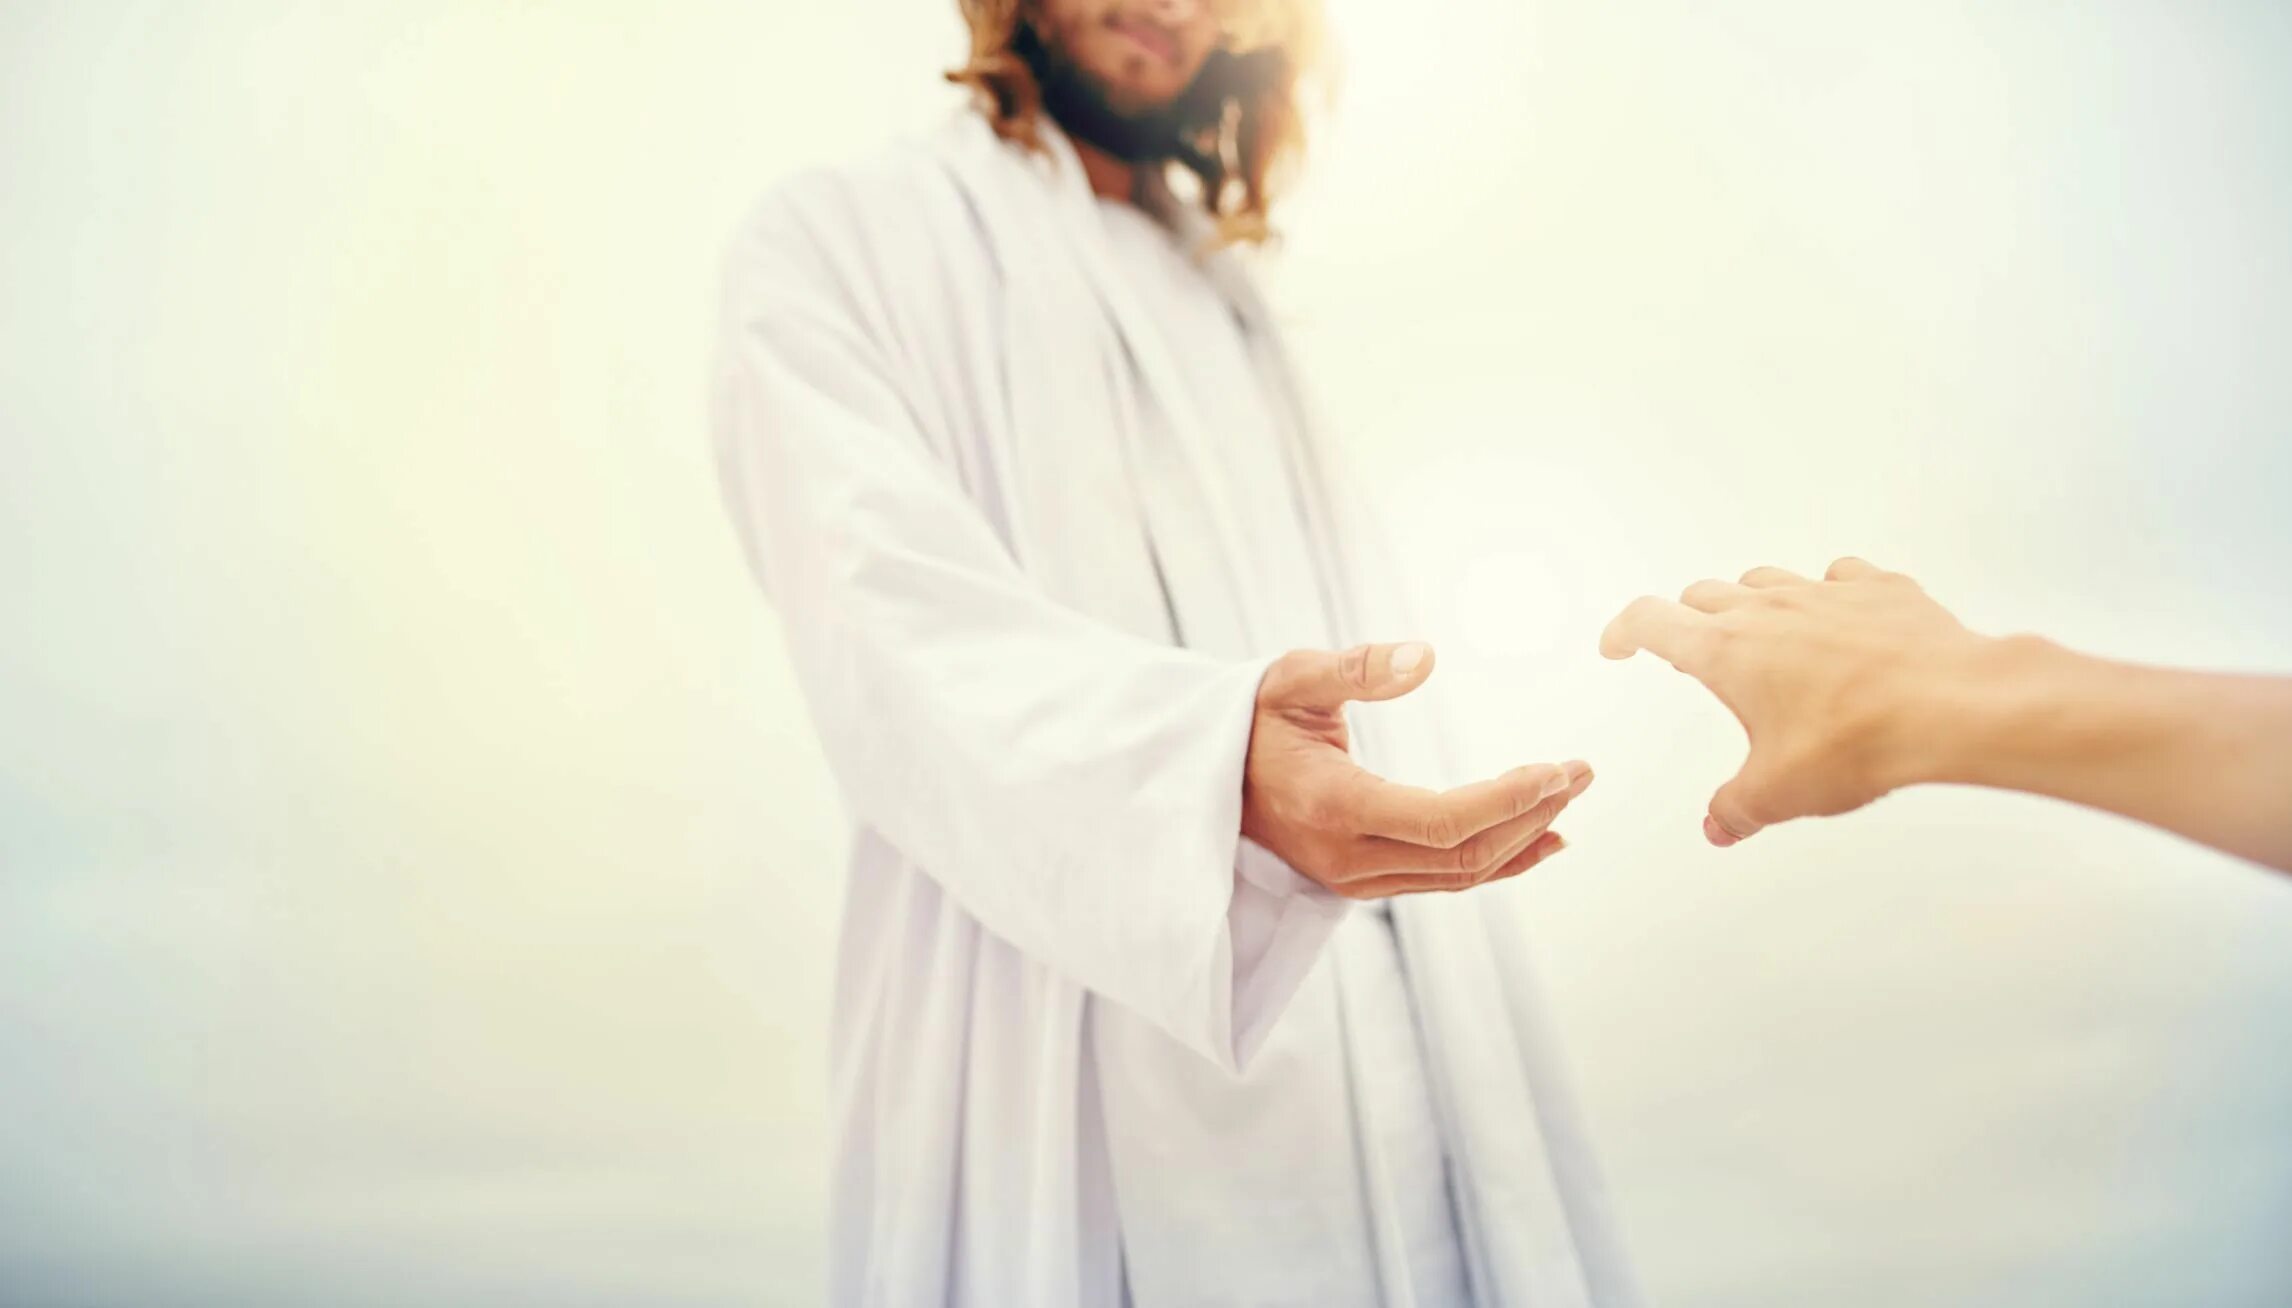 Духовный младший. " Иисус. Бог и человек". ( Jesus).. Встреча с Иисусом. Встреча со Христом. Христо мпротягивает руку.